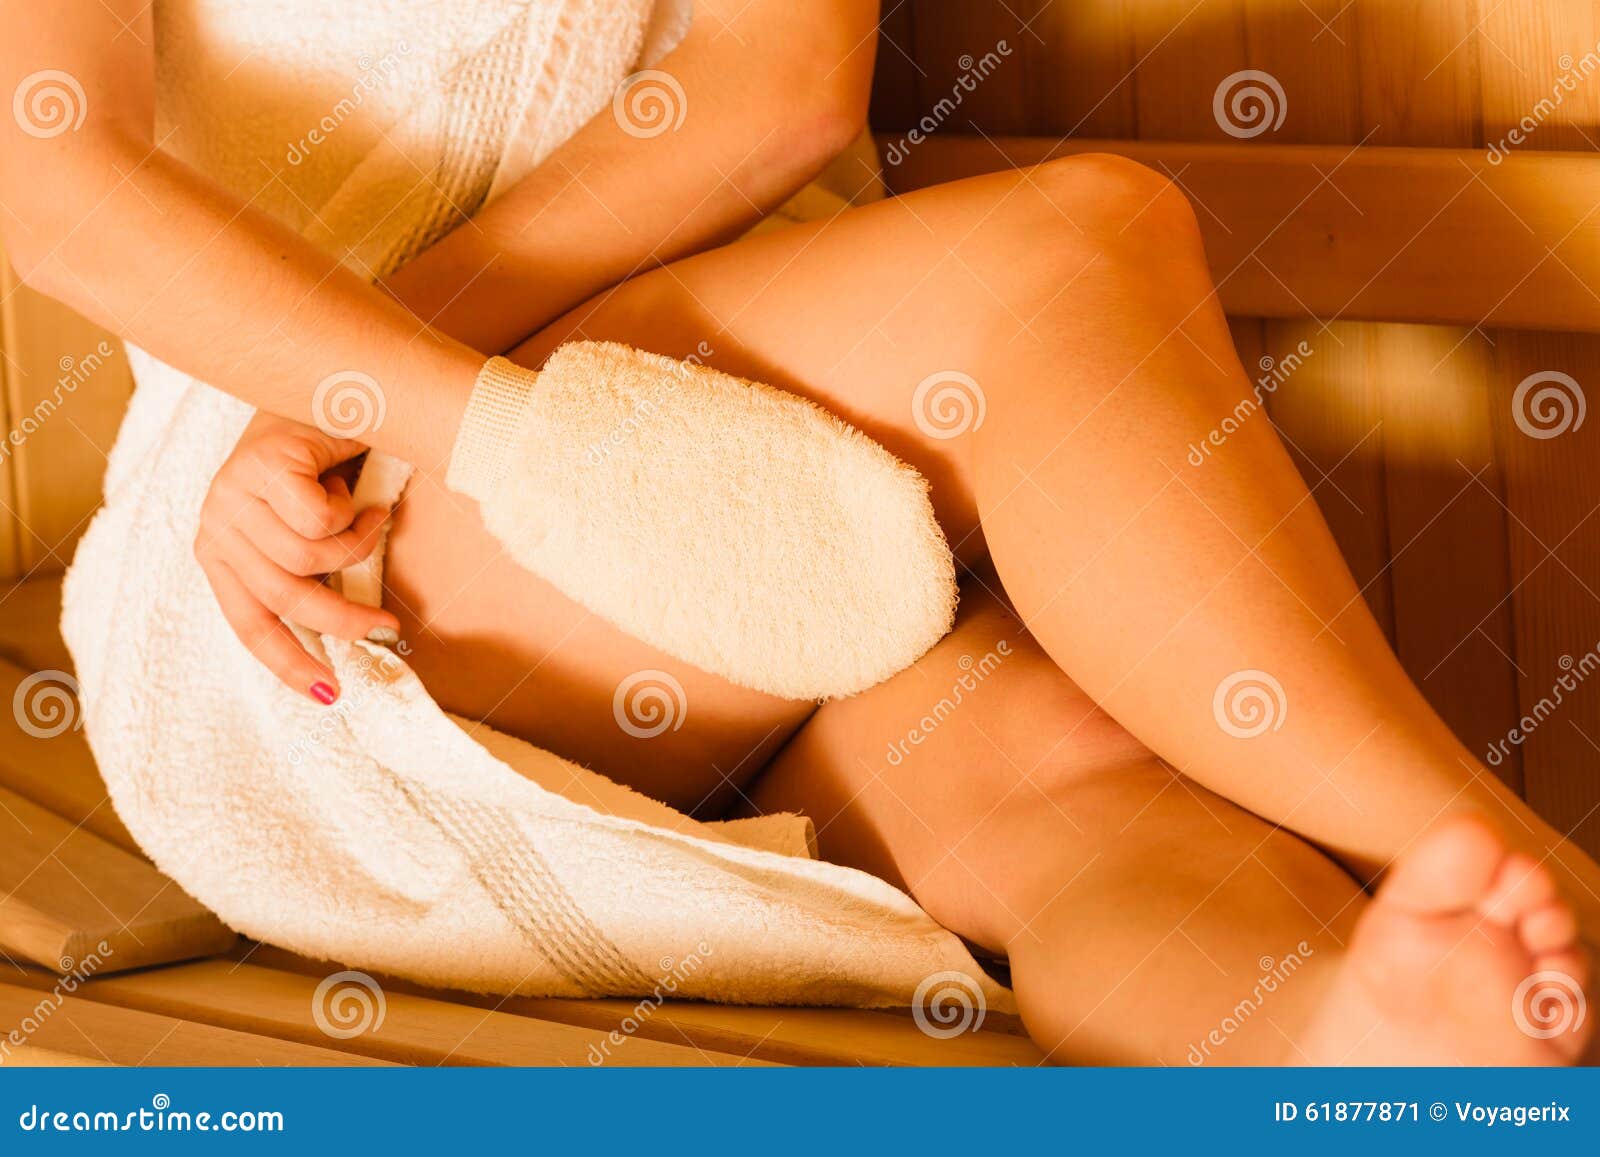 40+ Woman Massaging Body Glove Massage Shower Stock Photos